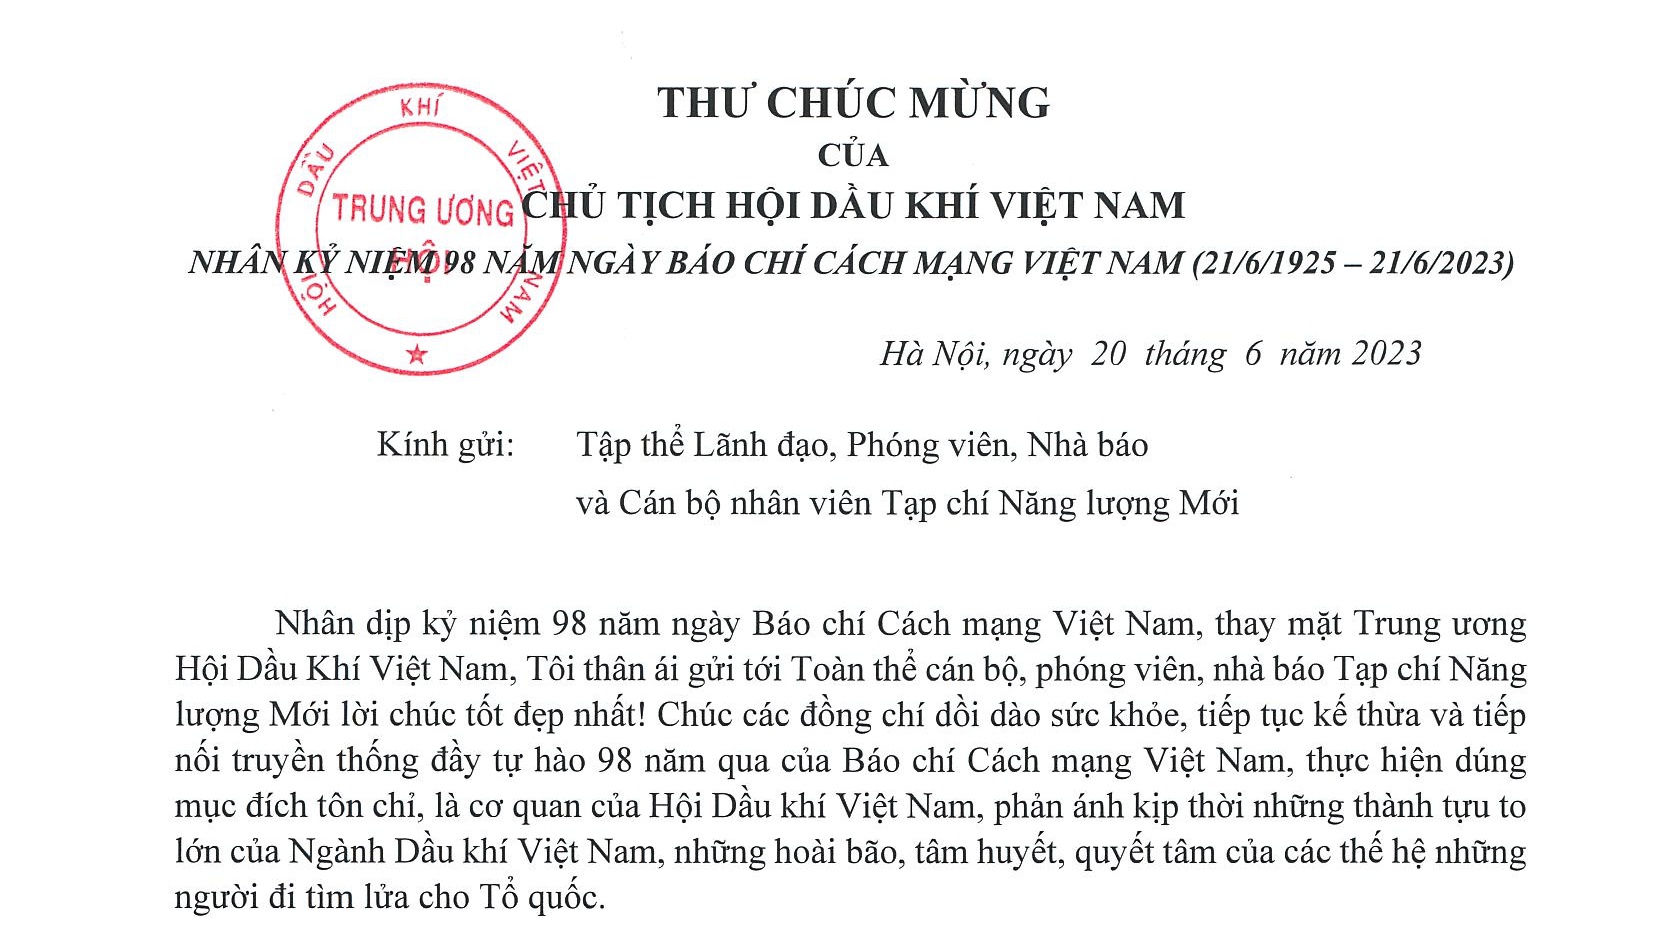 Chủ tịch Hội Dầu khí Việt Nam gửi thư chúc mừng Tạp chí Năng lượng Mới nhân Ngày Báo chí cách mạng Việt Nam